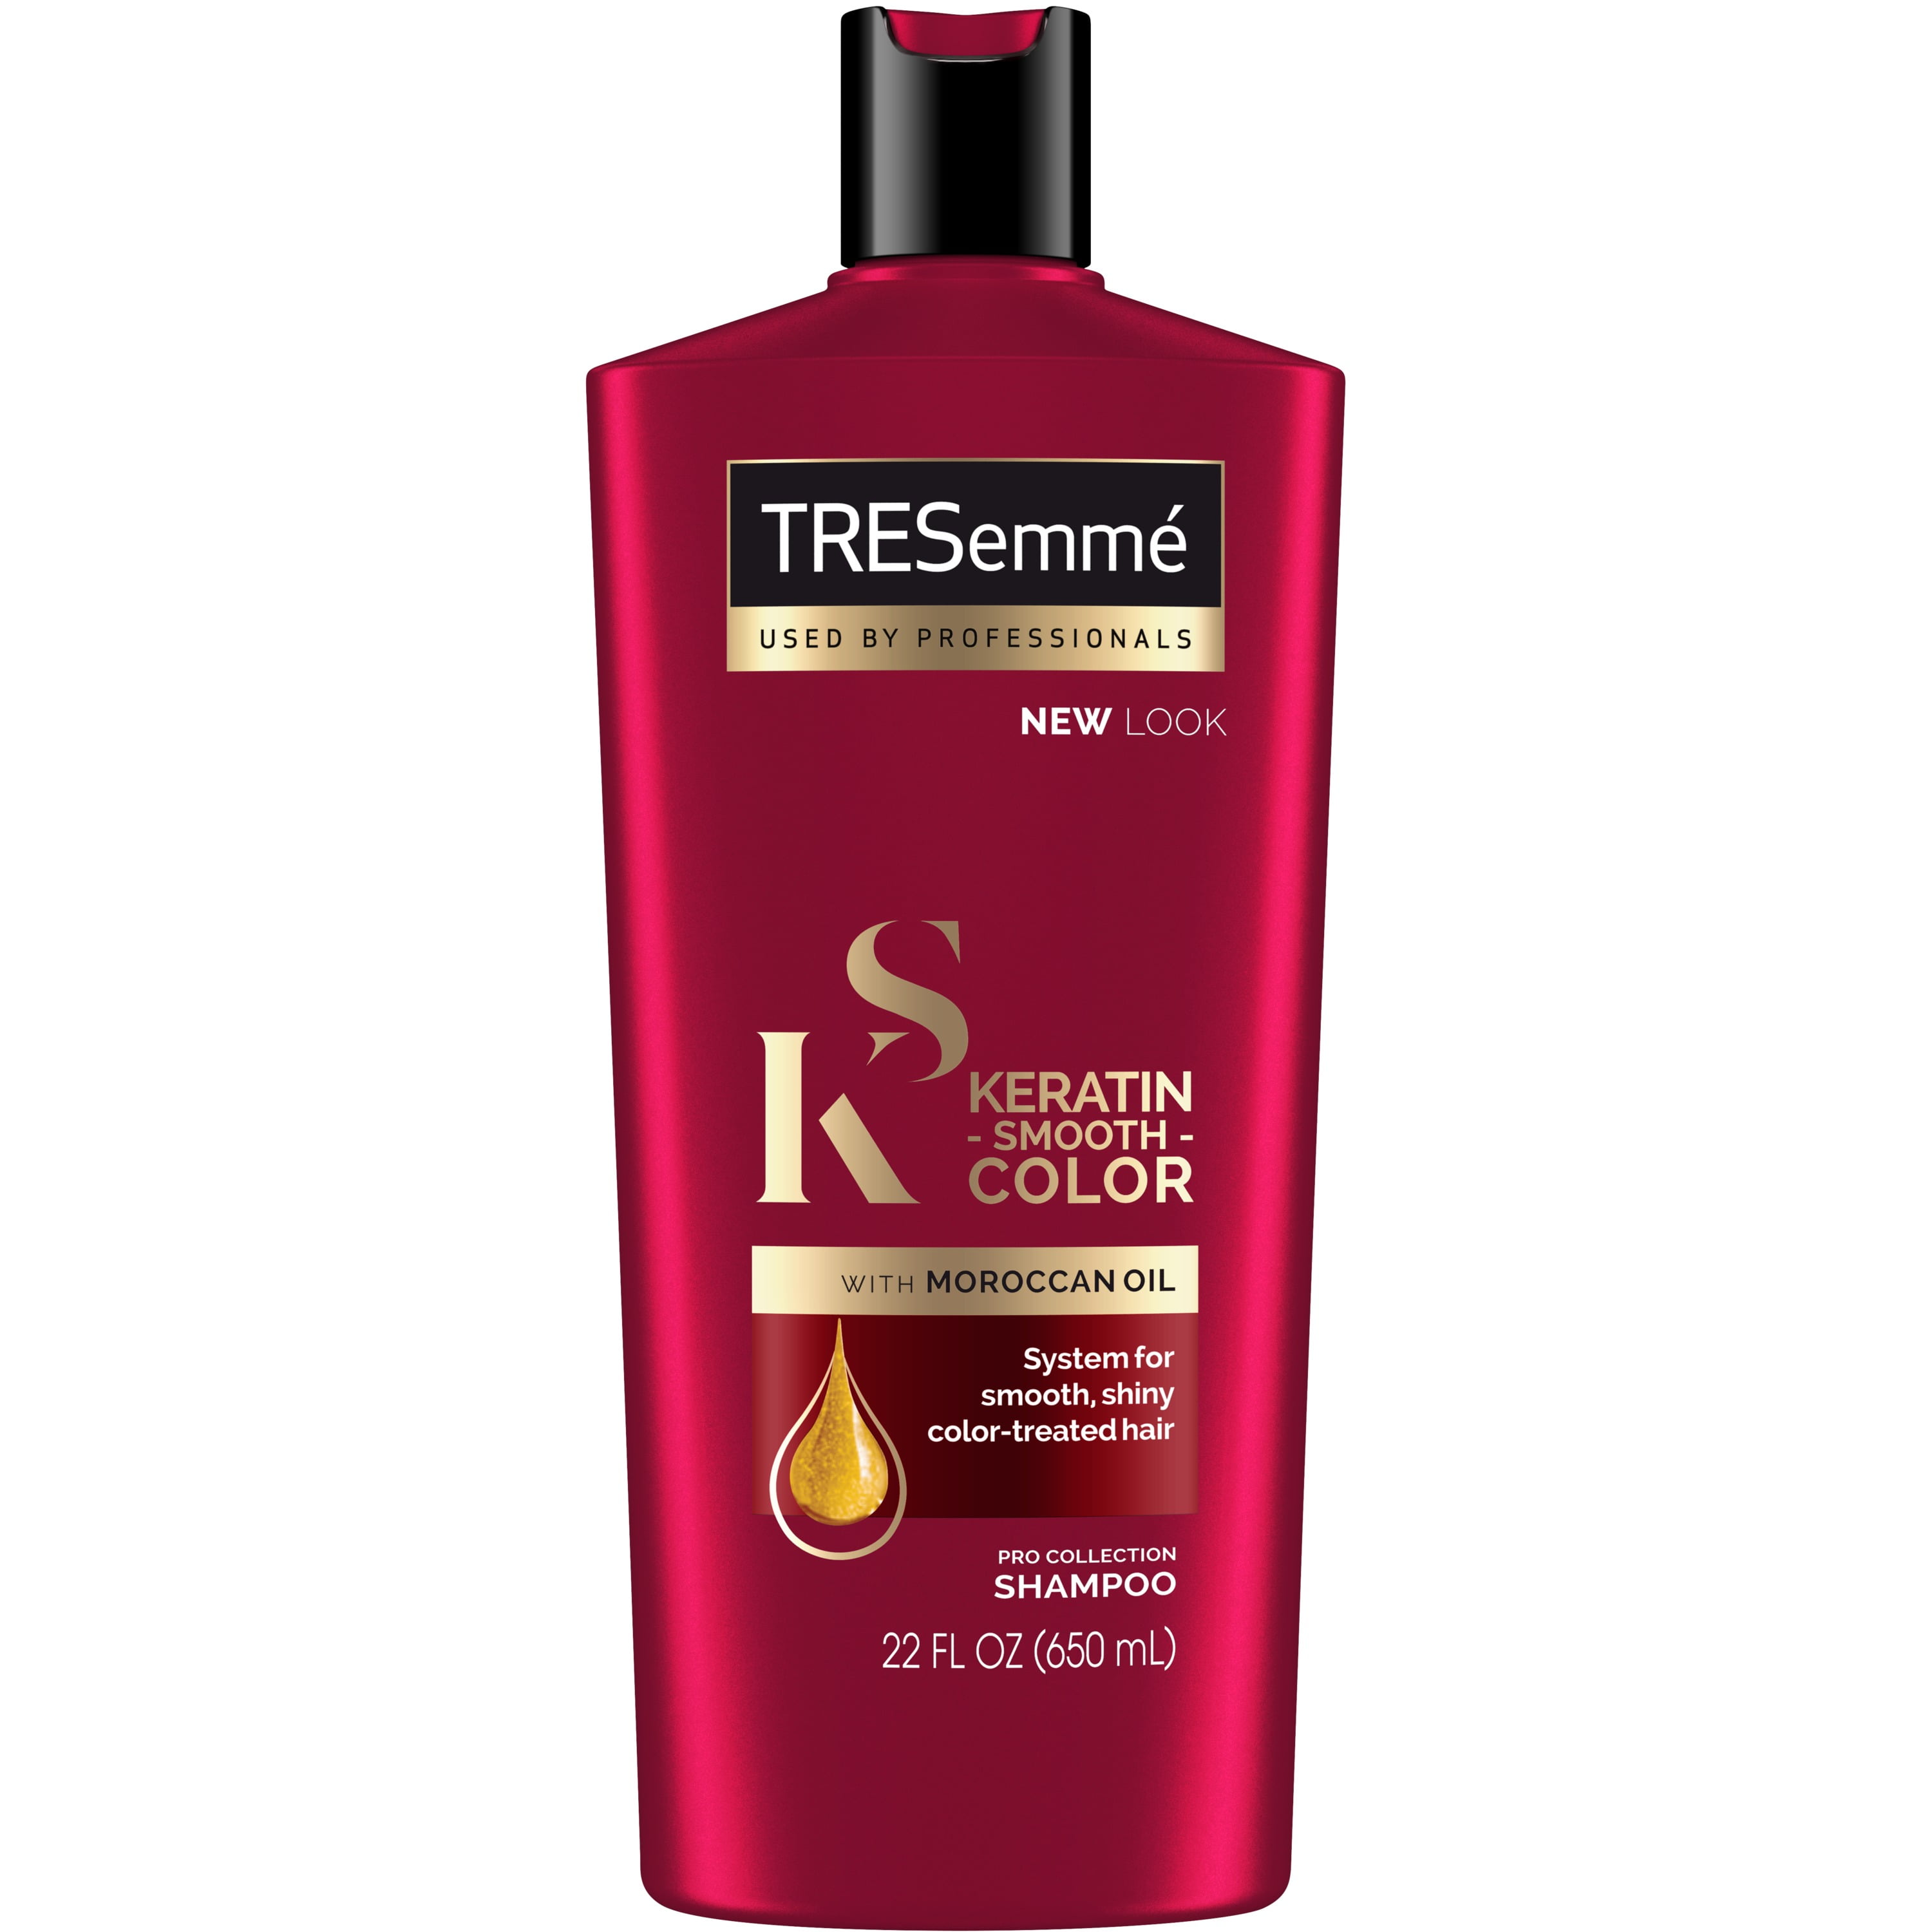 Shampoo Keratin Smooth Color, 22 oz - Walmart.com